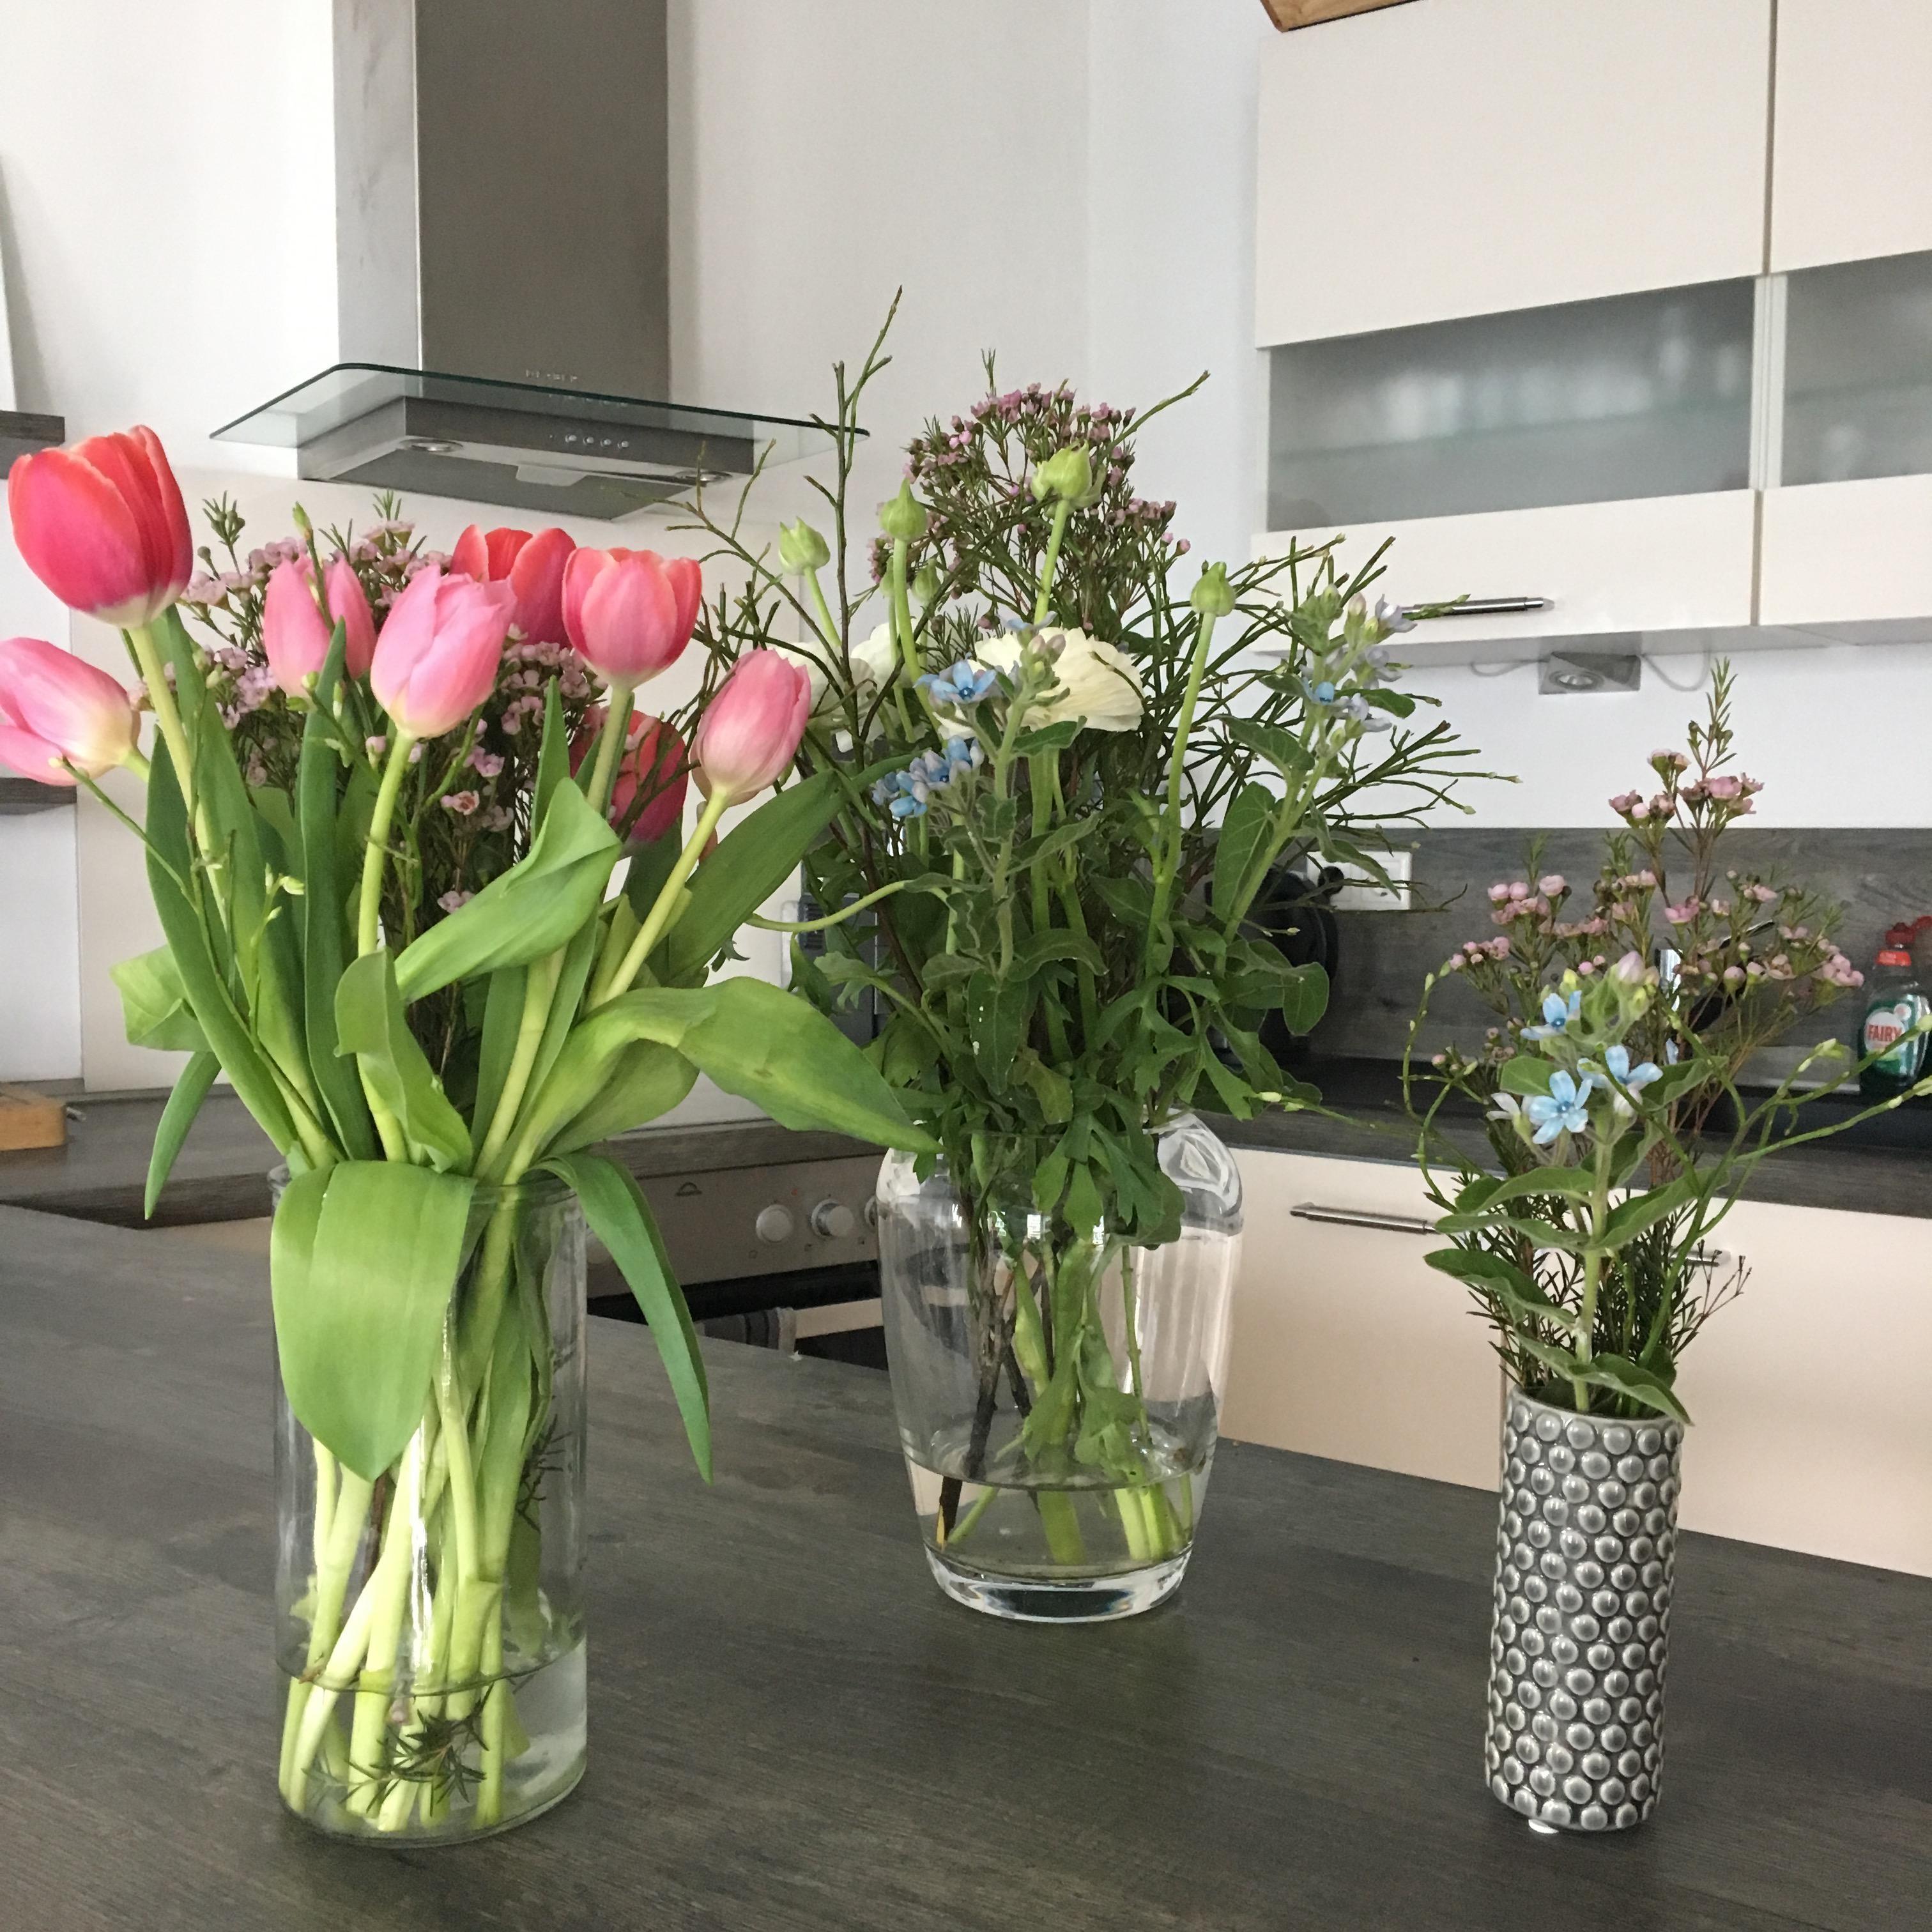 Flowerpower in der Küche 🌸
#sommerlieblinge #blumen #vasen #küche #whitehome #kitchen #tulpen
